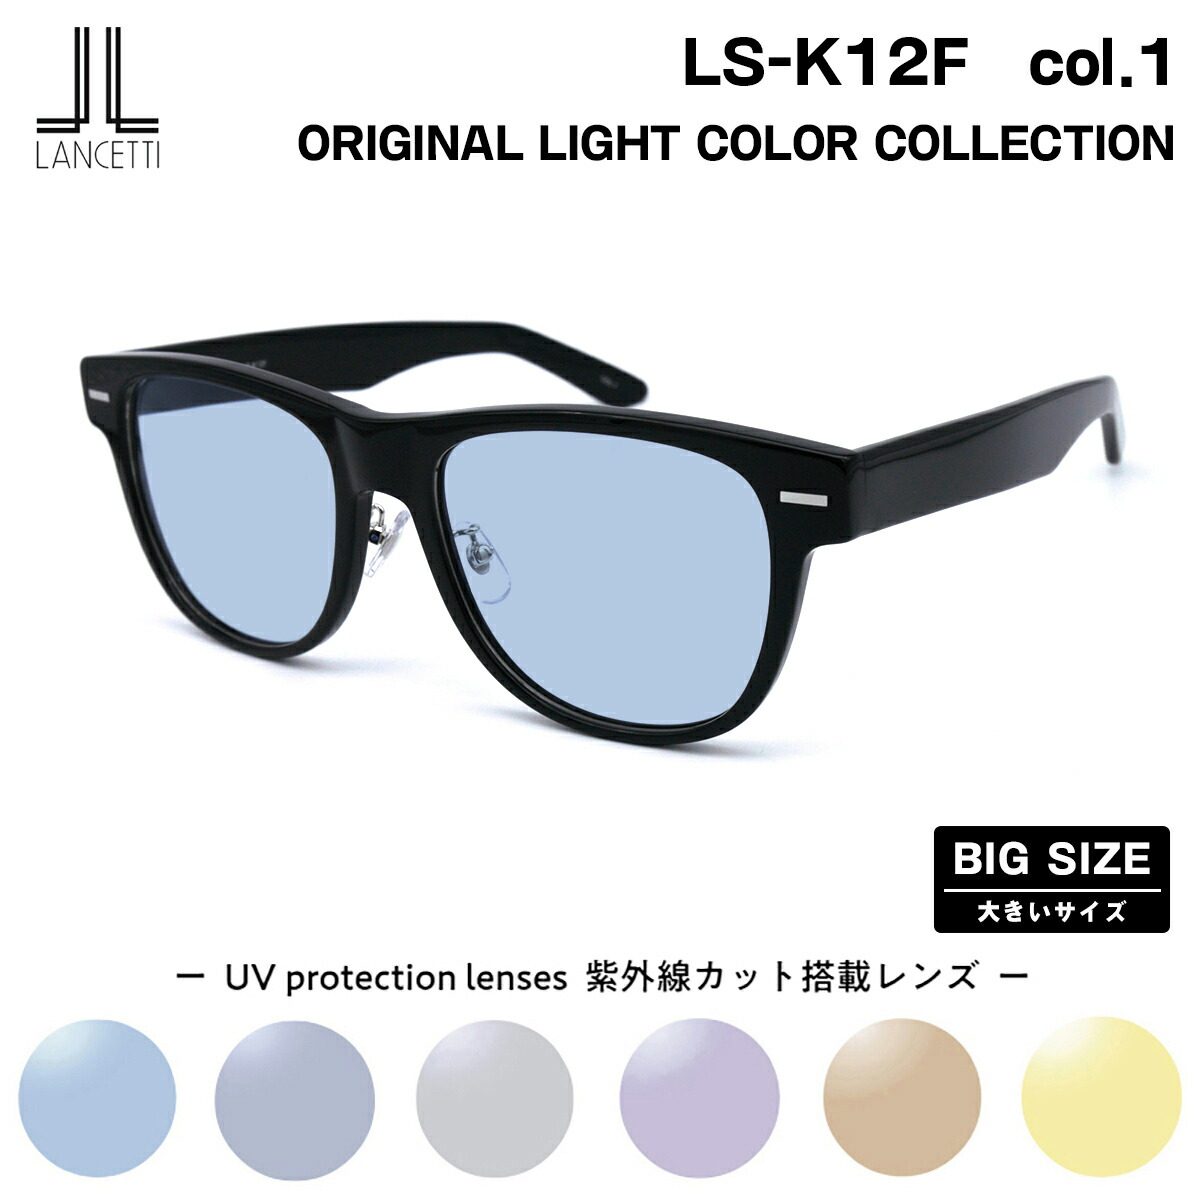  большой размер солнцезащитные очки свет цвет LS-K12F col.1 58mm 62mm ланч .tiLANCETTI BIG широкий большой лицо большой рисунок 